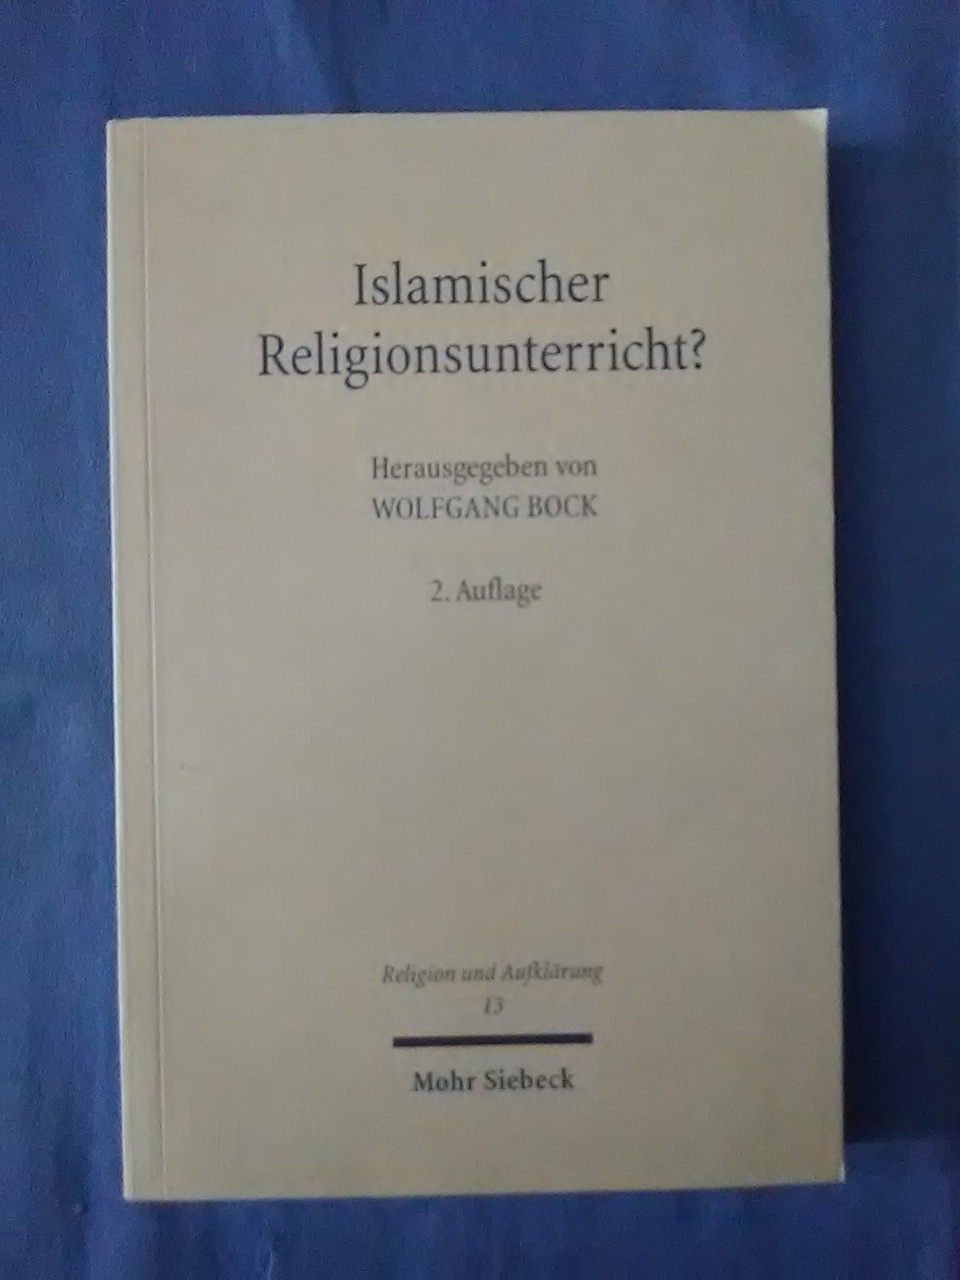 Islamischer Religionsunterricht? : Rechtsfragen, Länderberichte, Hintergründe. Wolfgang Bock (Hrsg.) / Religion und Aufklärung ; Bd. 13 2., durchges. Aufl. - Bock, Wolfgang (Herausgeber).